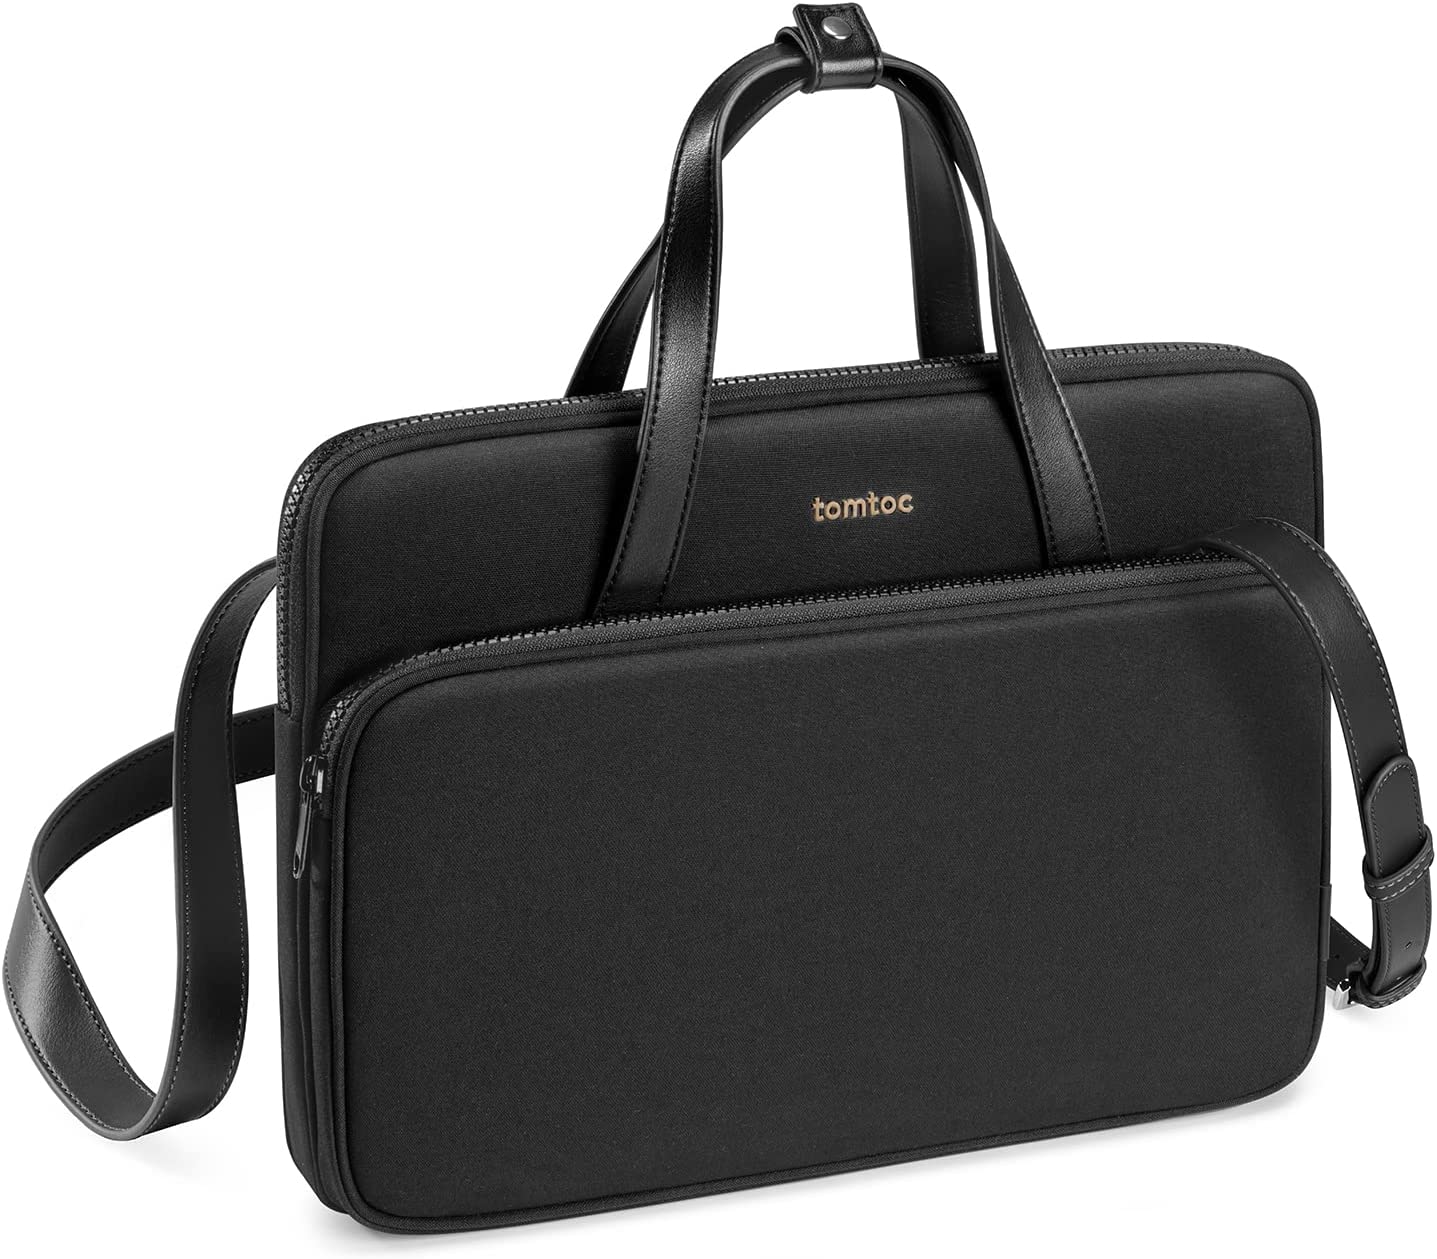 Tomtoc TheHer-H22 Laptop Shoulder Bag 13-14 inch - Black